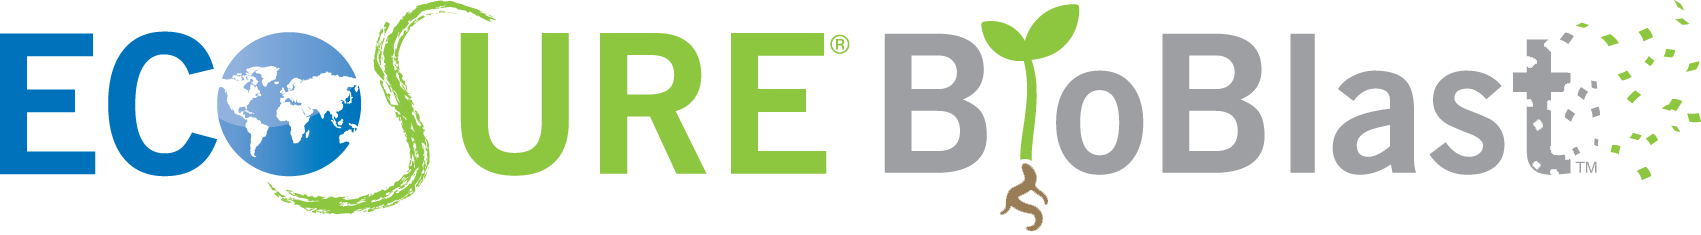 EcoSure BioBlast